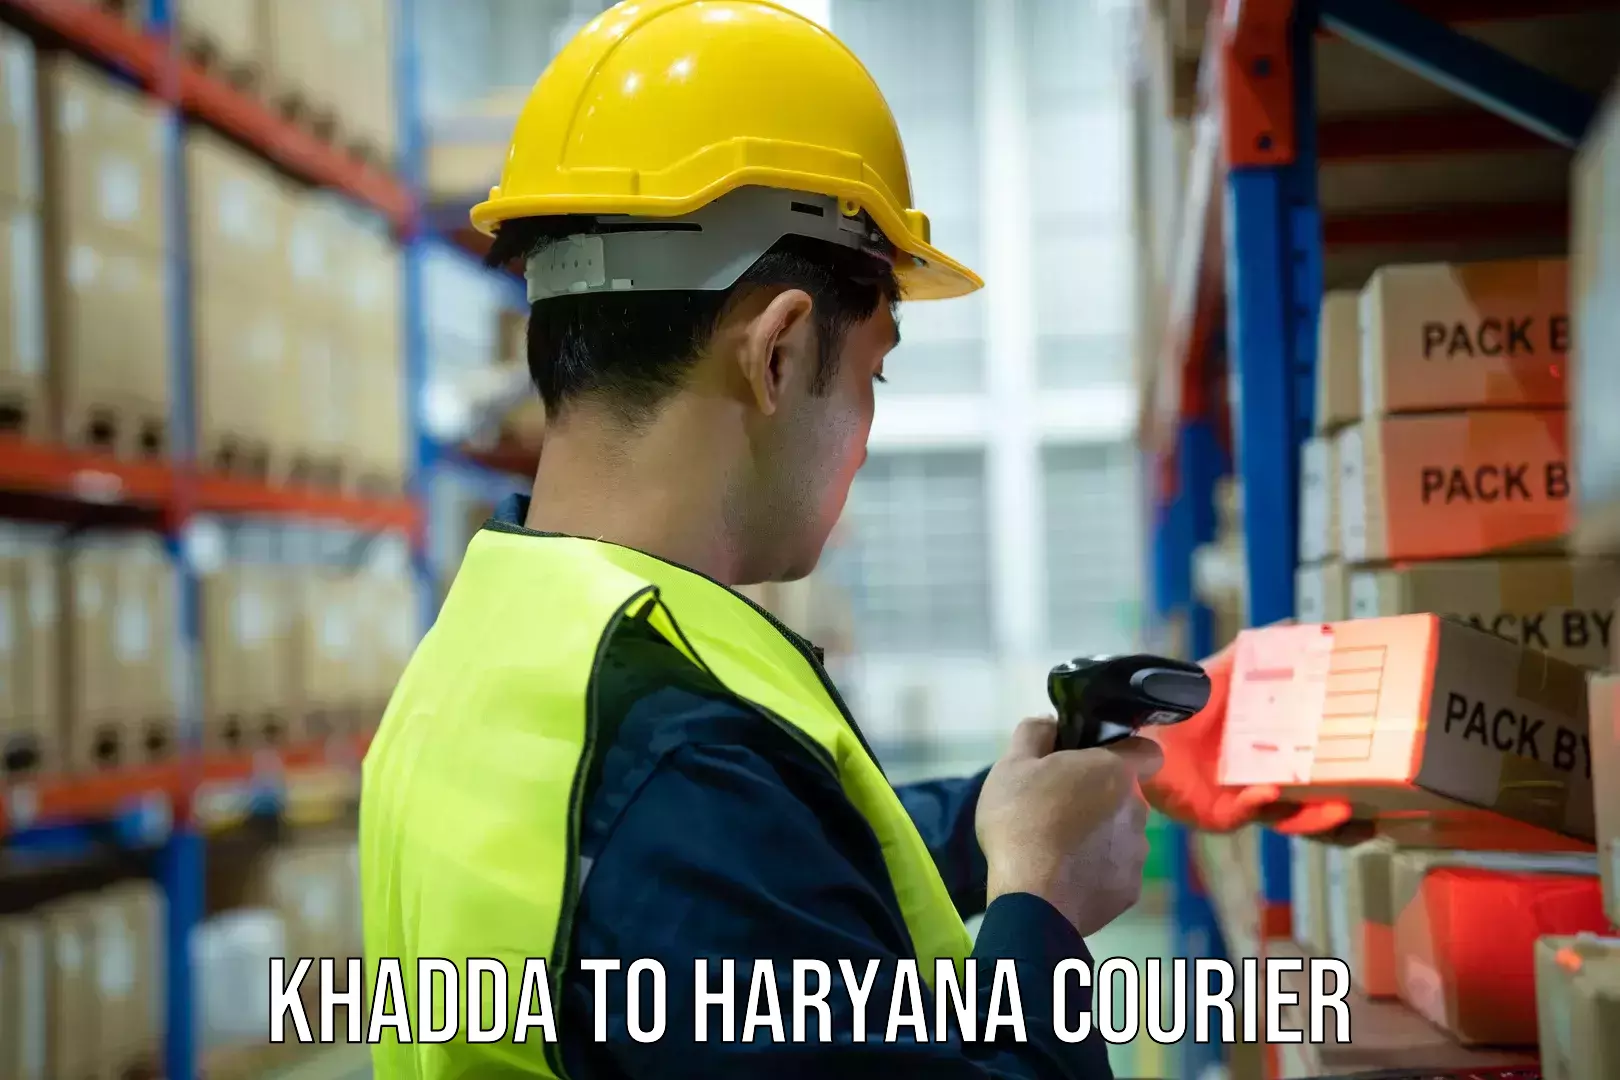 Courier dispatch services Khadda to Shahabad Markanda